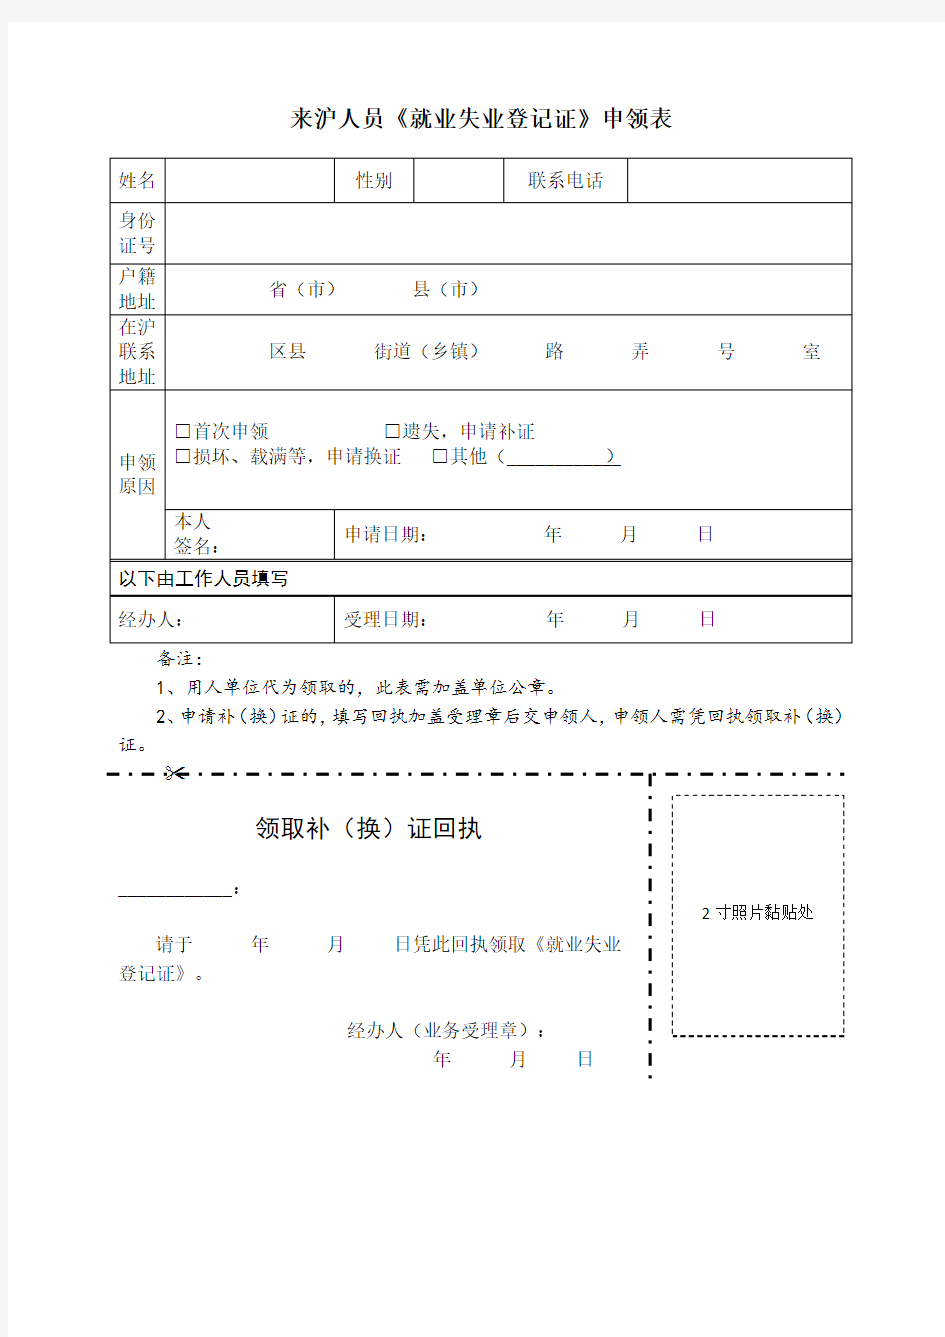 4-来沪人员《就业失业登记证》申领表